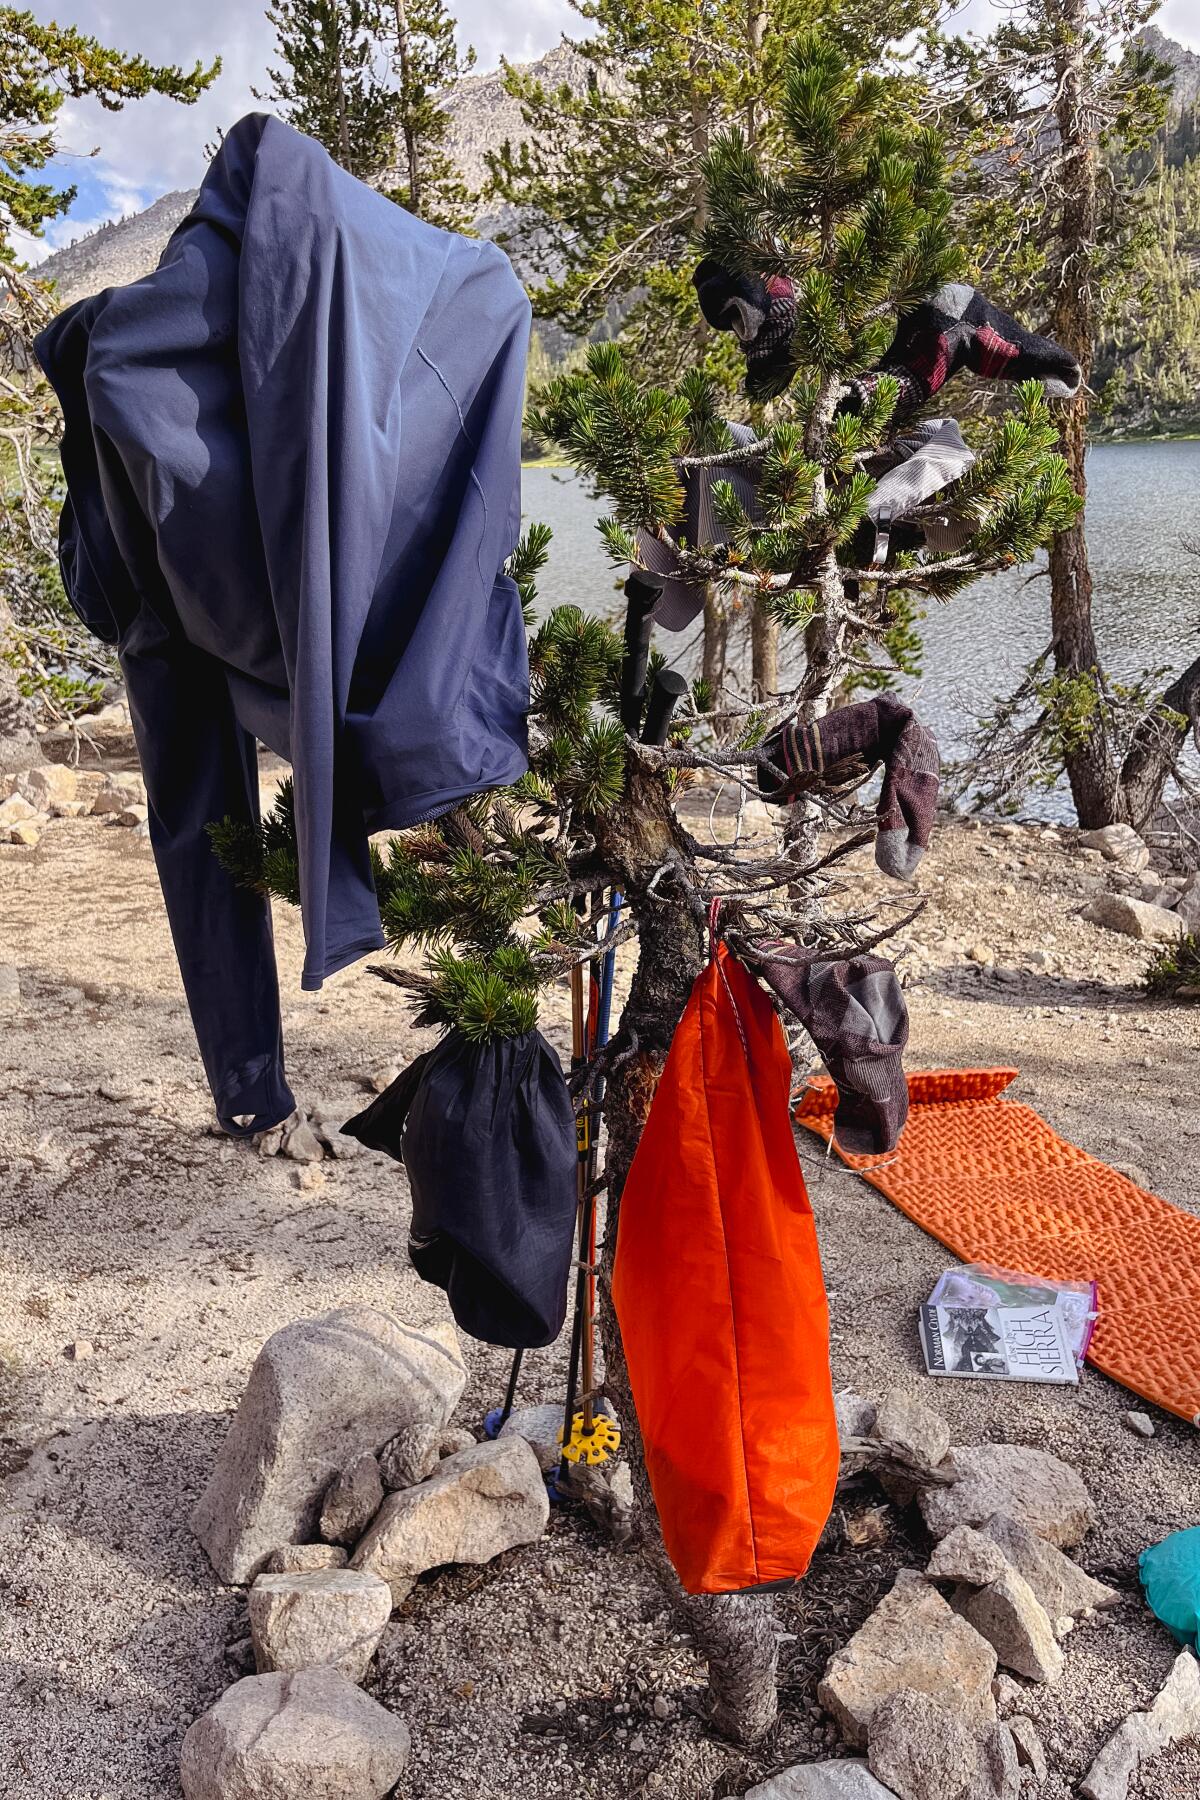 Giysiler ve kamp malzemeleri gölün yakınındaki bir ağaca asılıyor. 